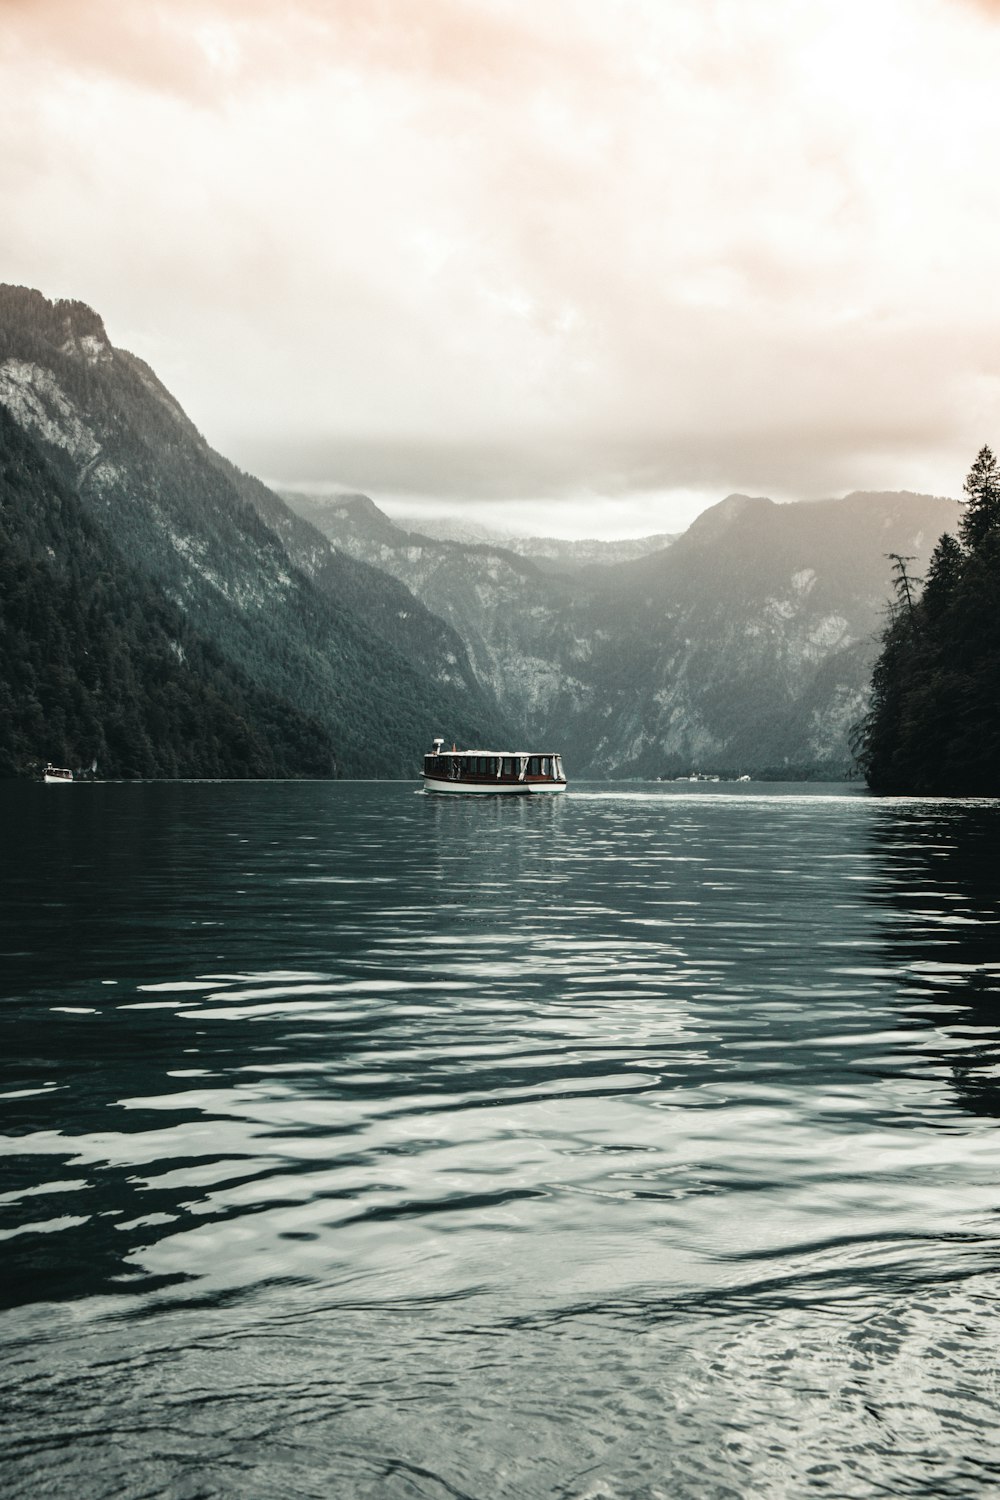 white boat on lake near green mountains during daytime